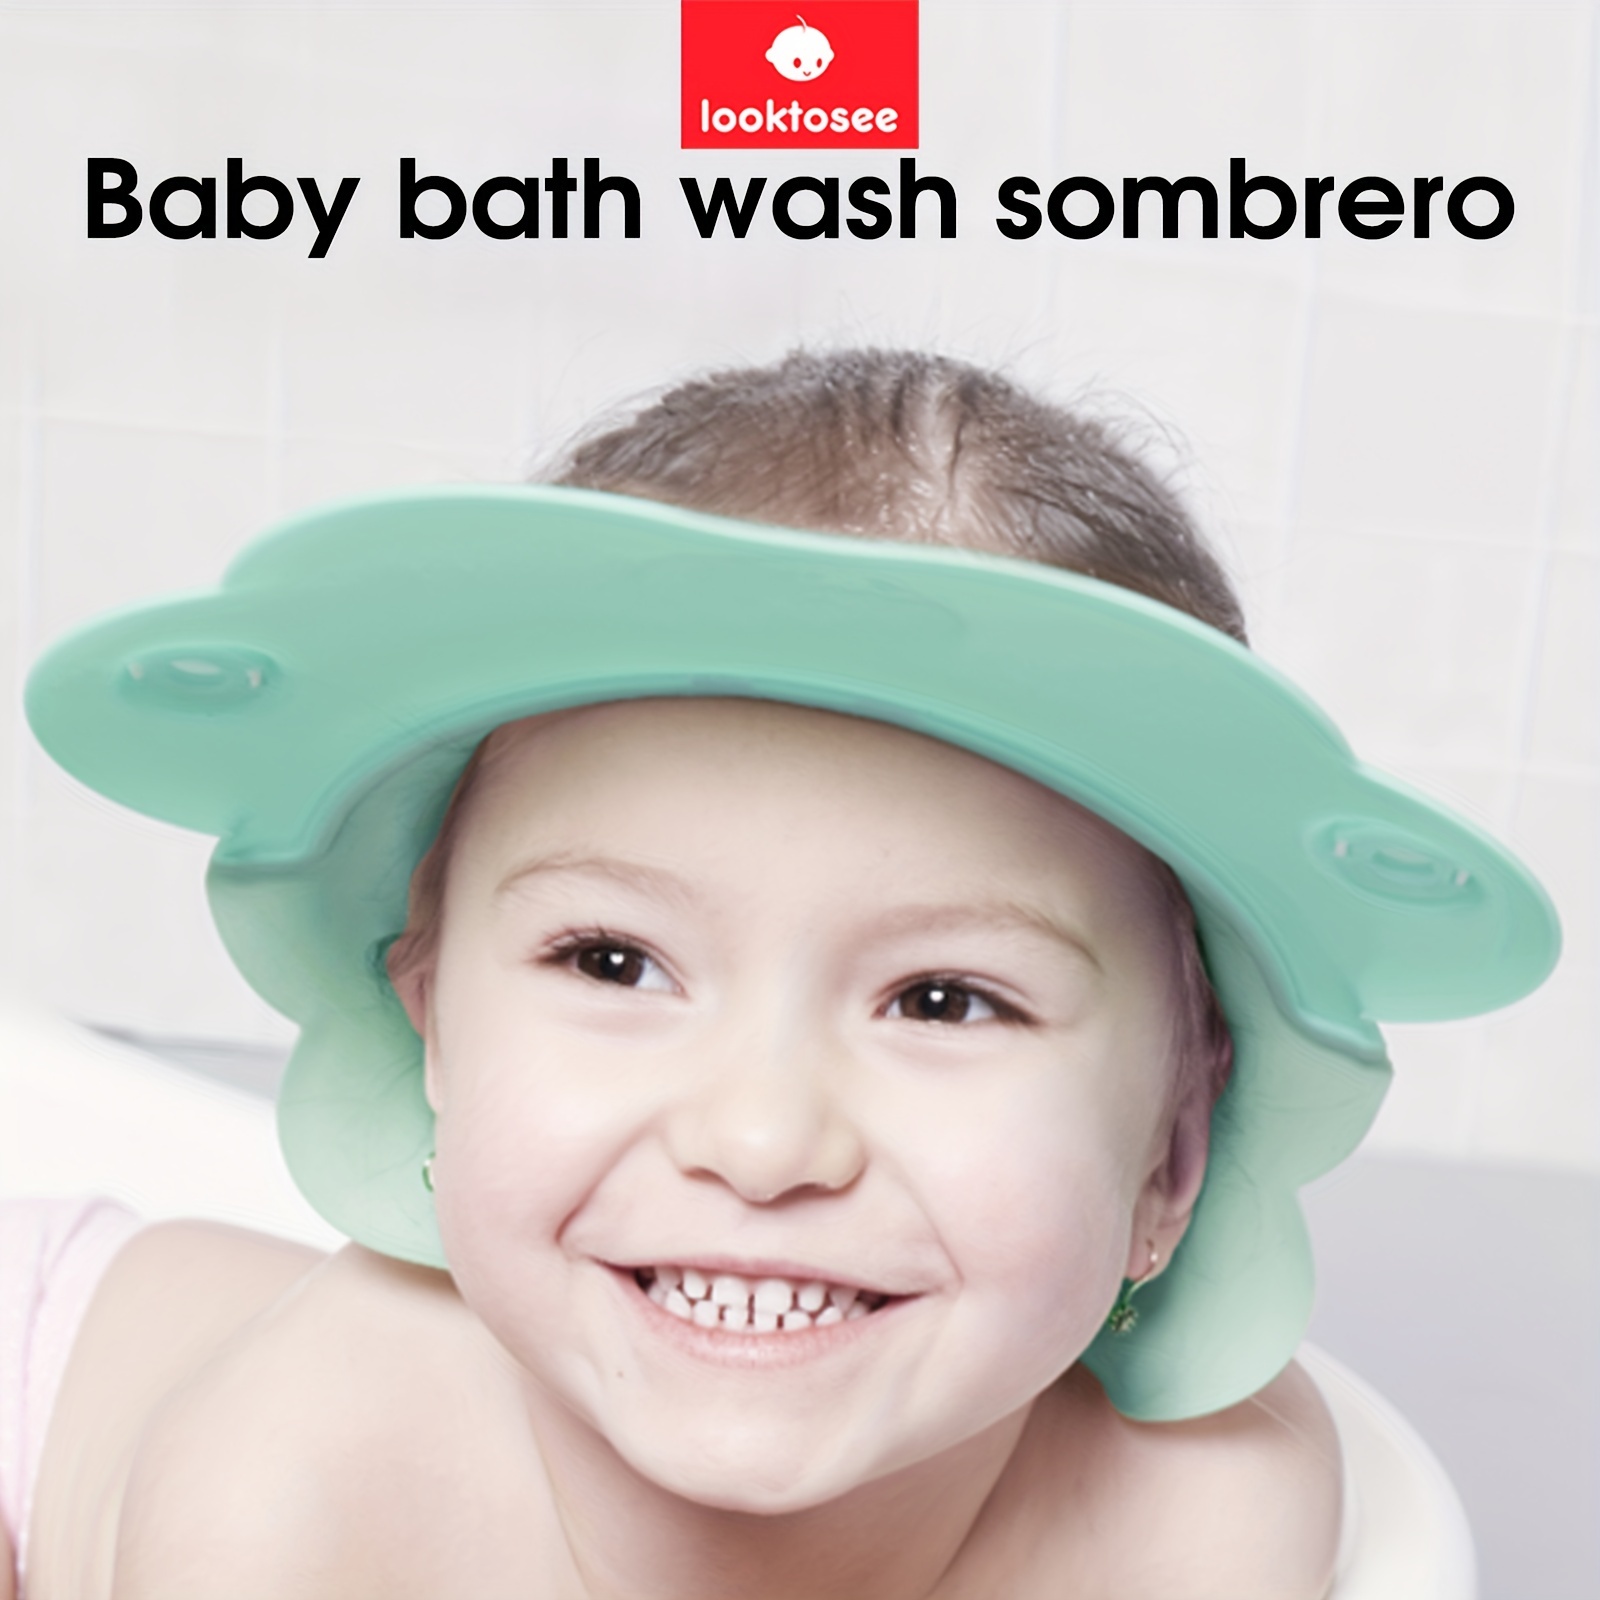 Gorros de baño ajustables de satén para niños, gorros de ducha para niñas y  bebés, banda elástica, reversible, suave, transpirable